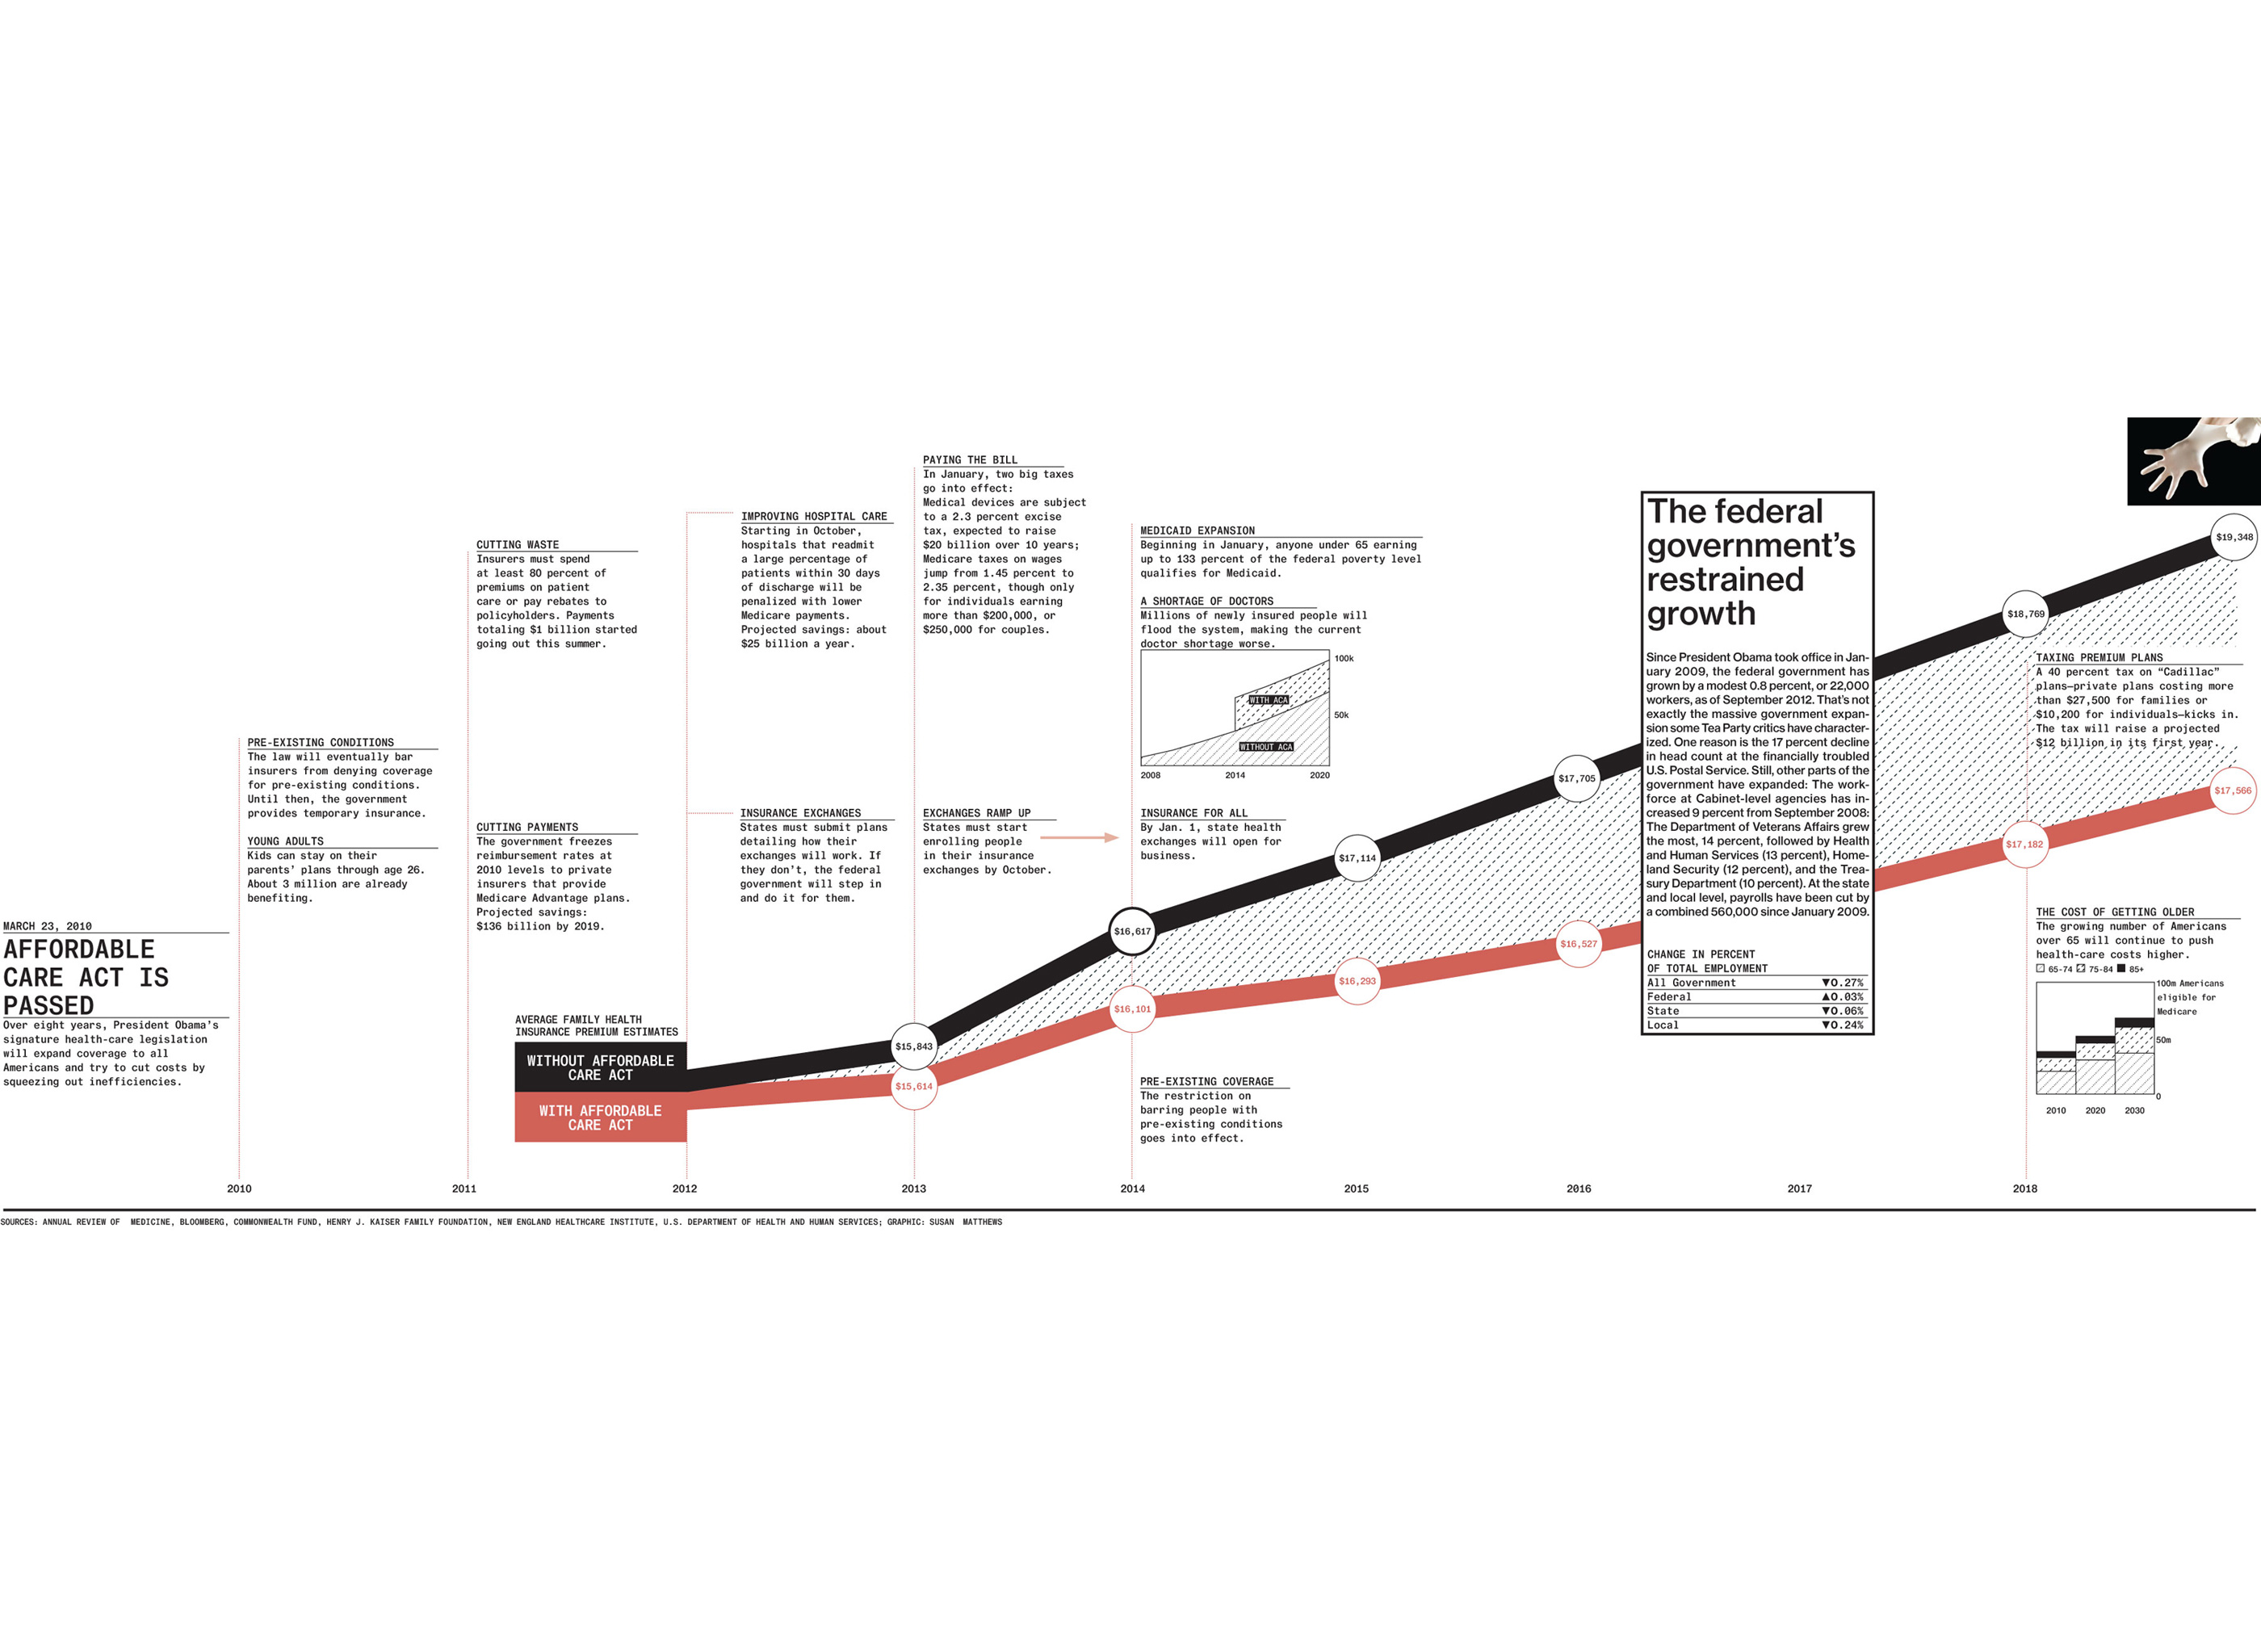 aca timeline infographic